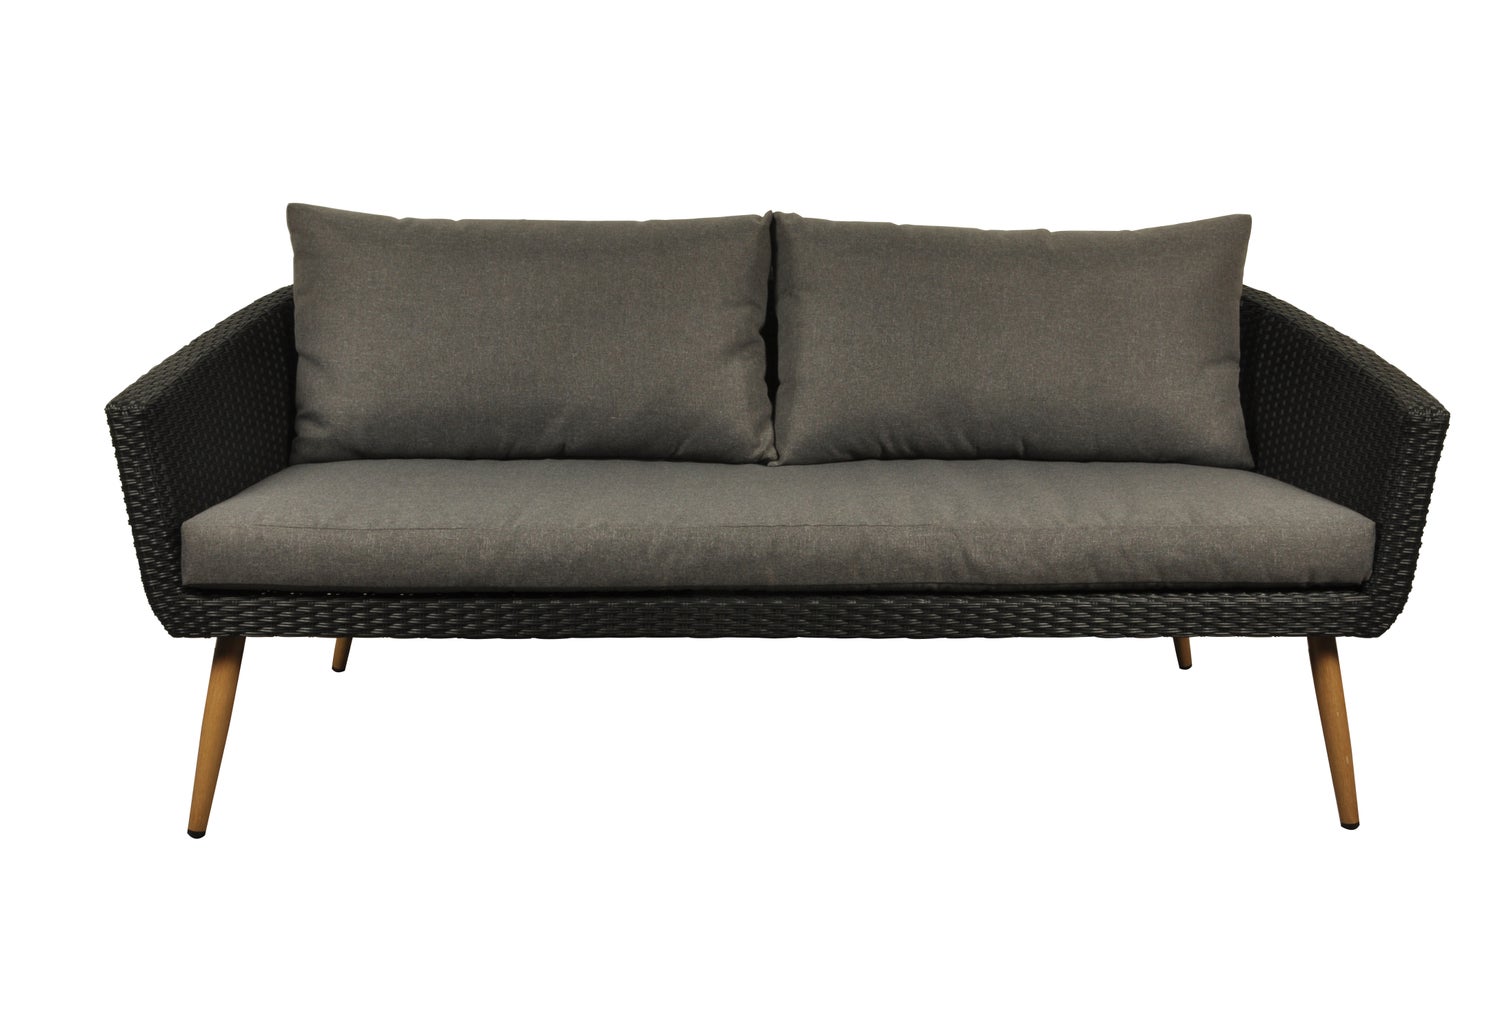 Accon Garten Lounge Sofa, 3 Personen inkl. Auflagen schwarz/grau.